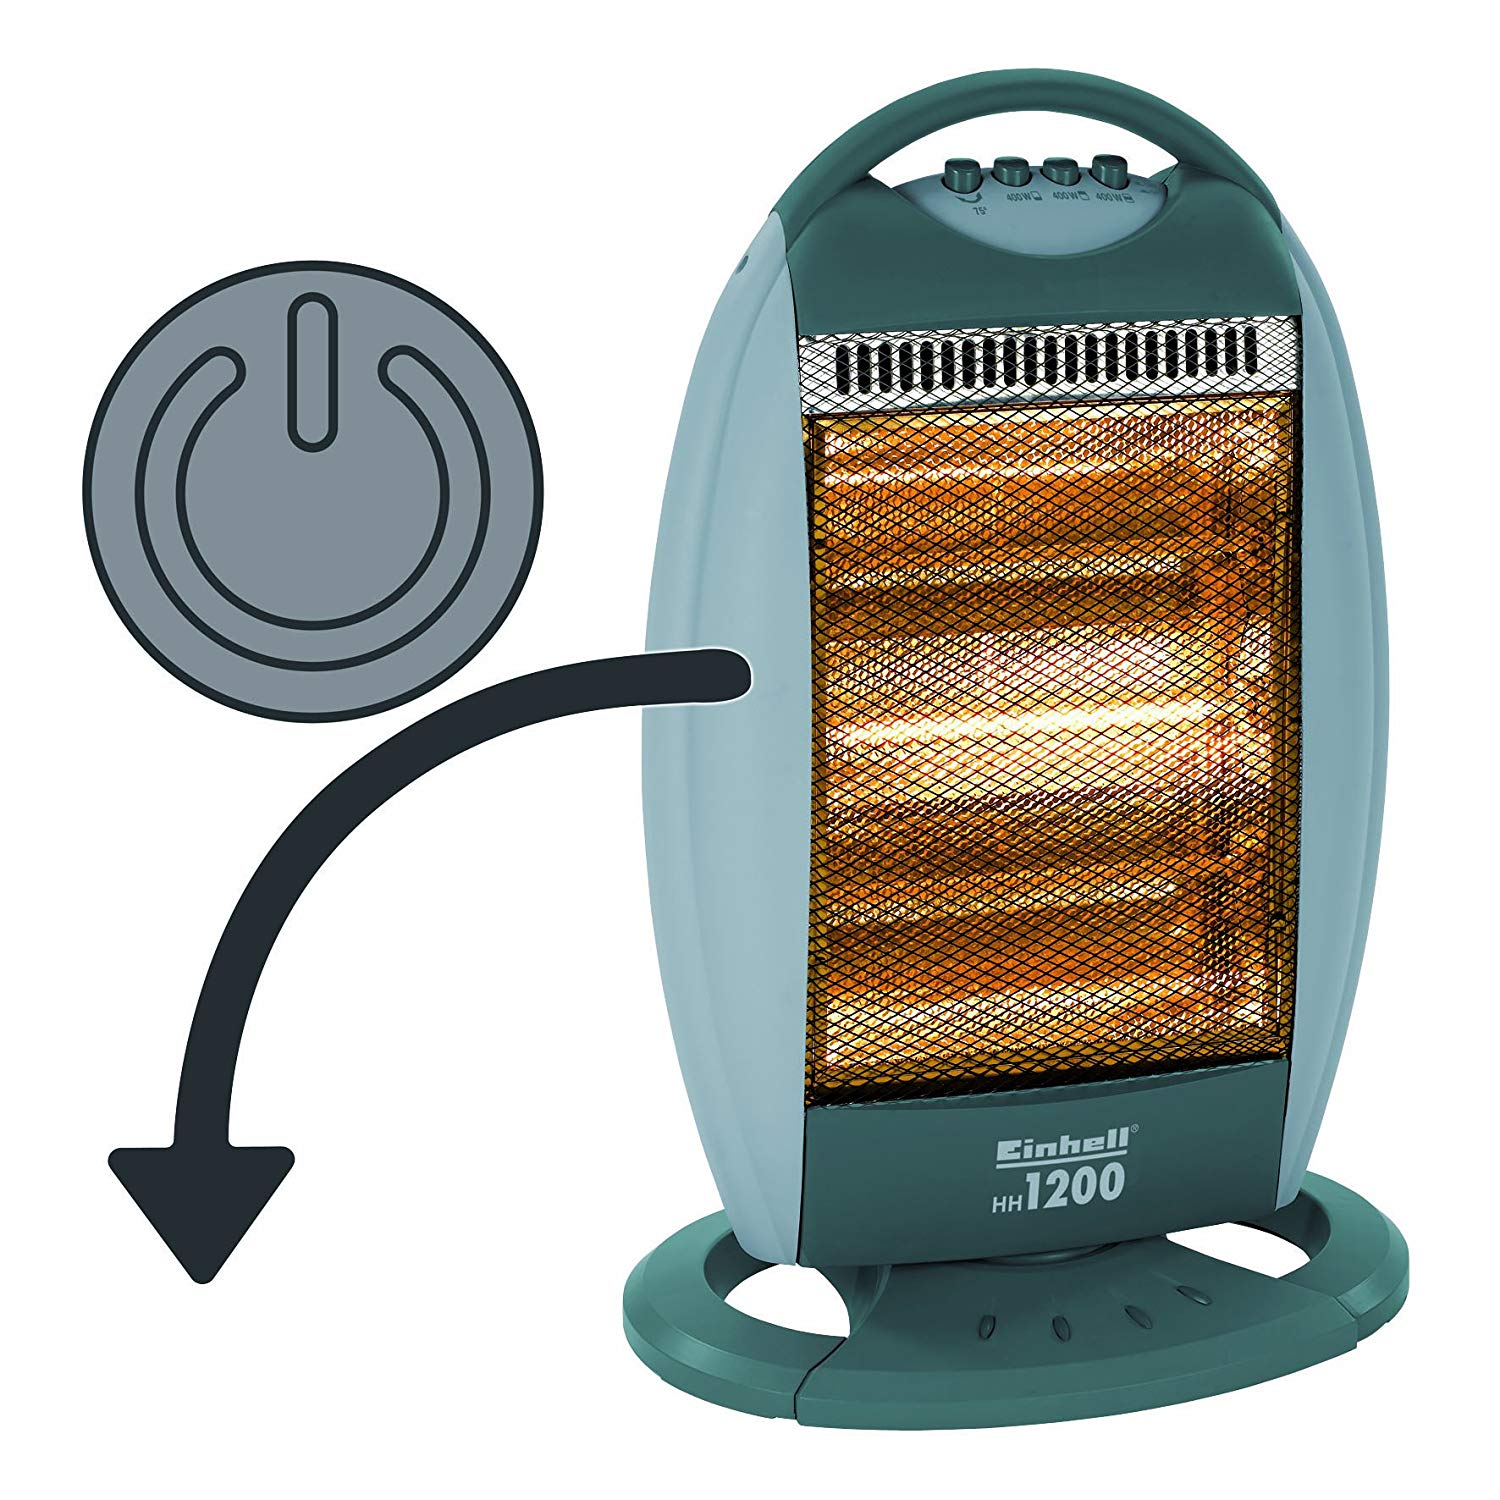 Maximale beveiliging
De halogeen stralingsverwarmer is uitgerust met een automatische uitschakeling om het apparaat onmiddellijk uit te schakelen wanneer het omvalt.